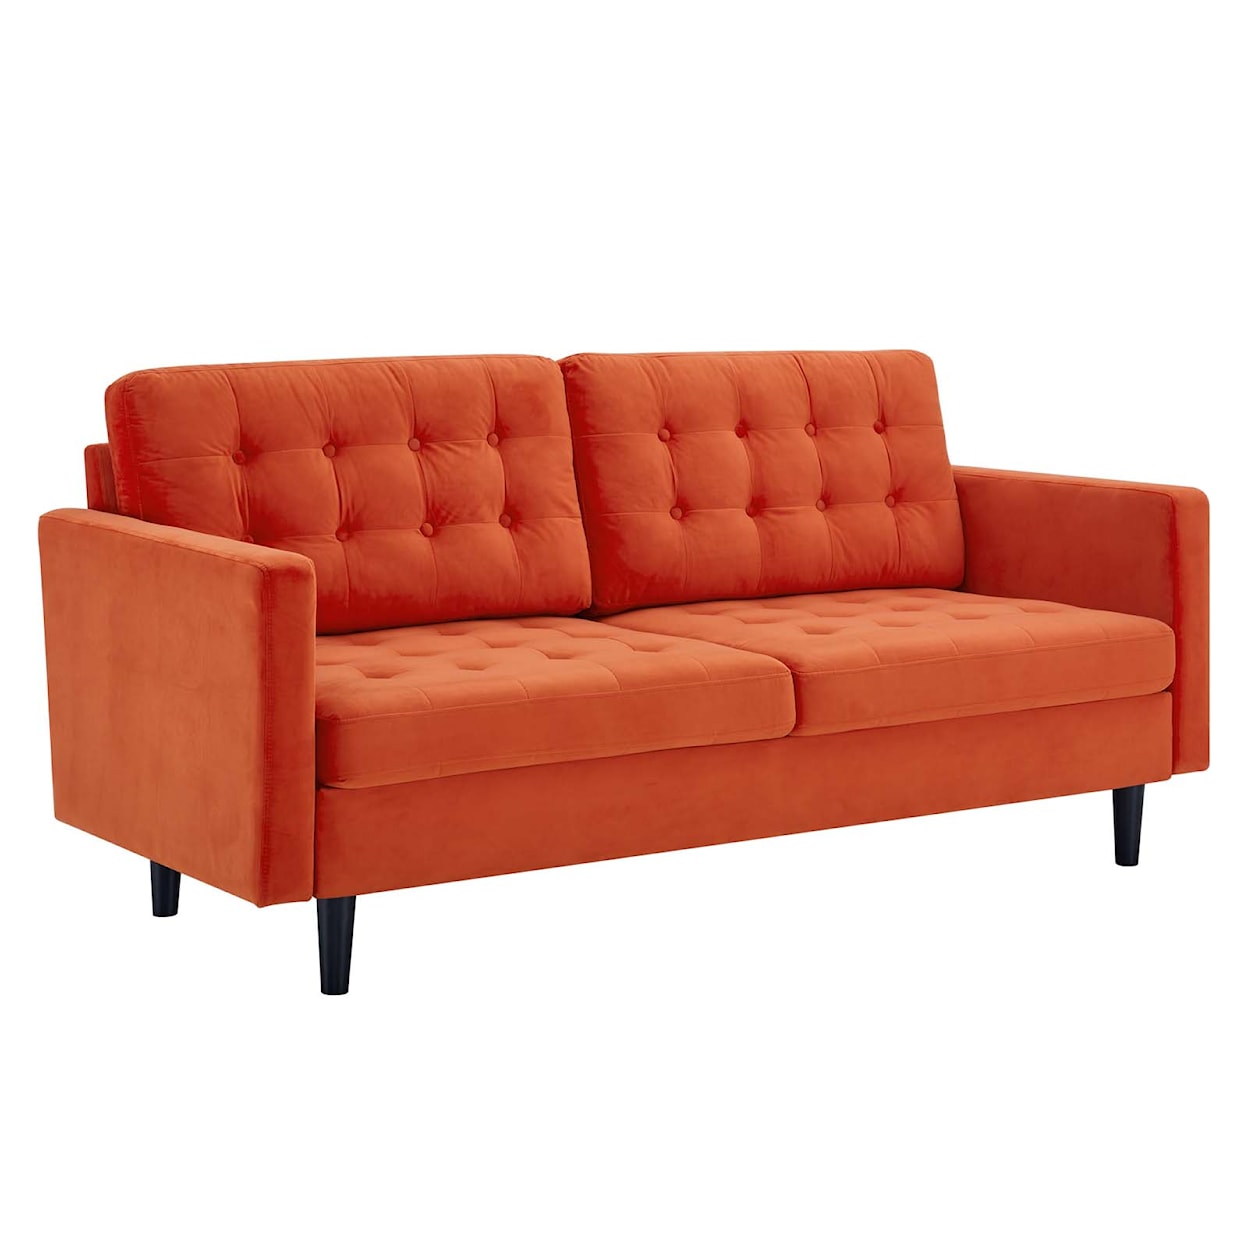 Modway Exalt Sofa